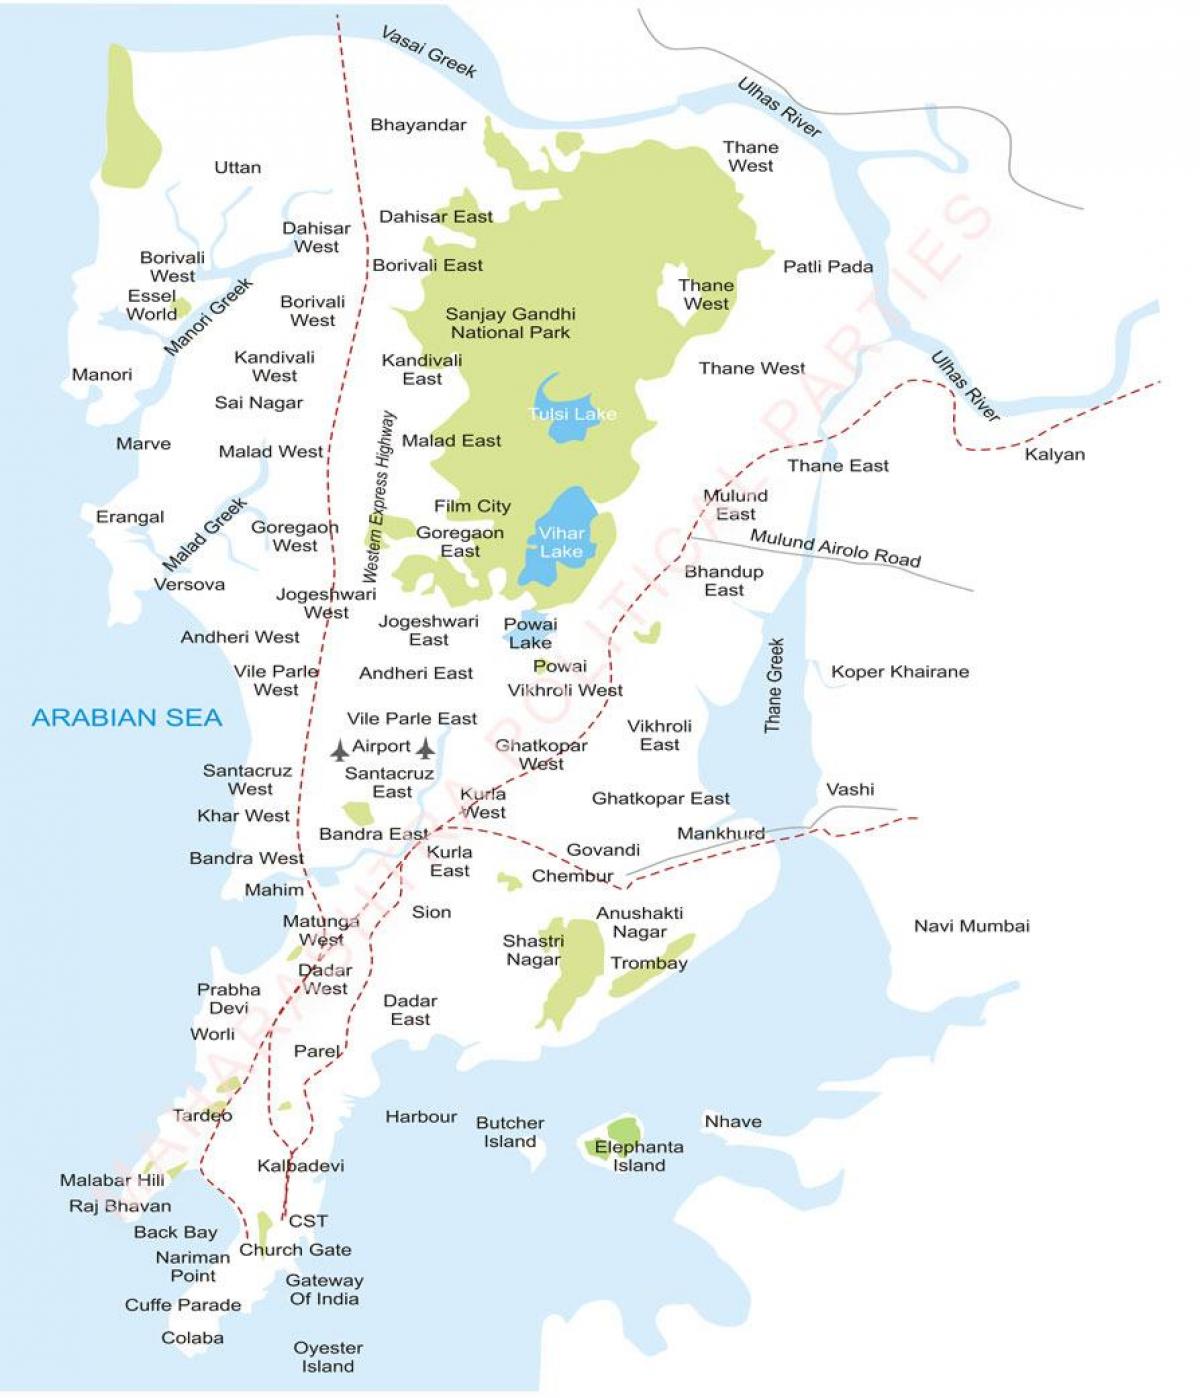 મુંબઇ પરાં નકશો